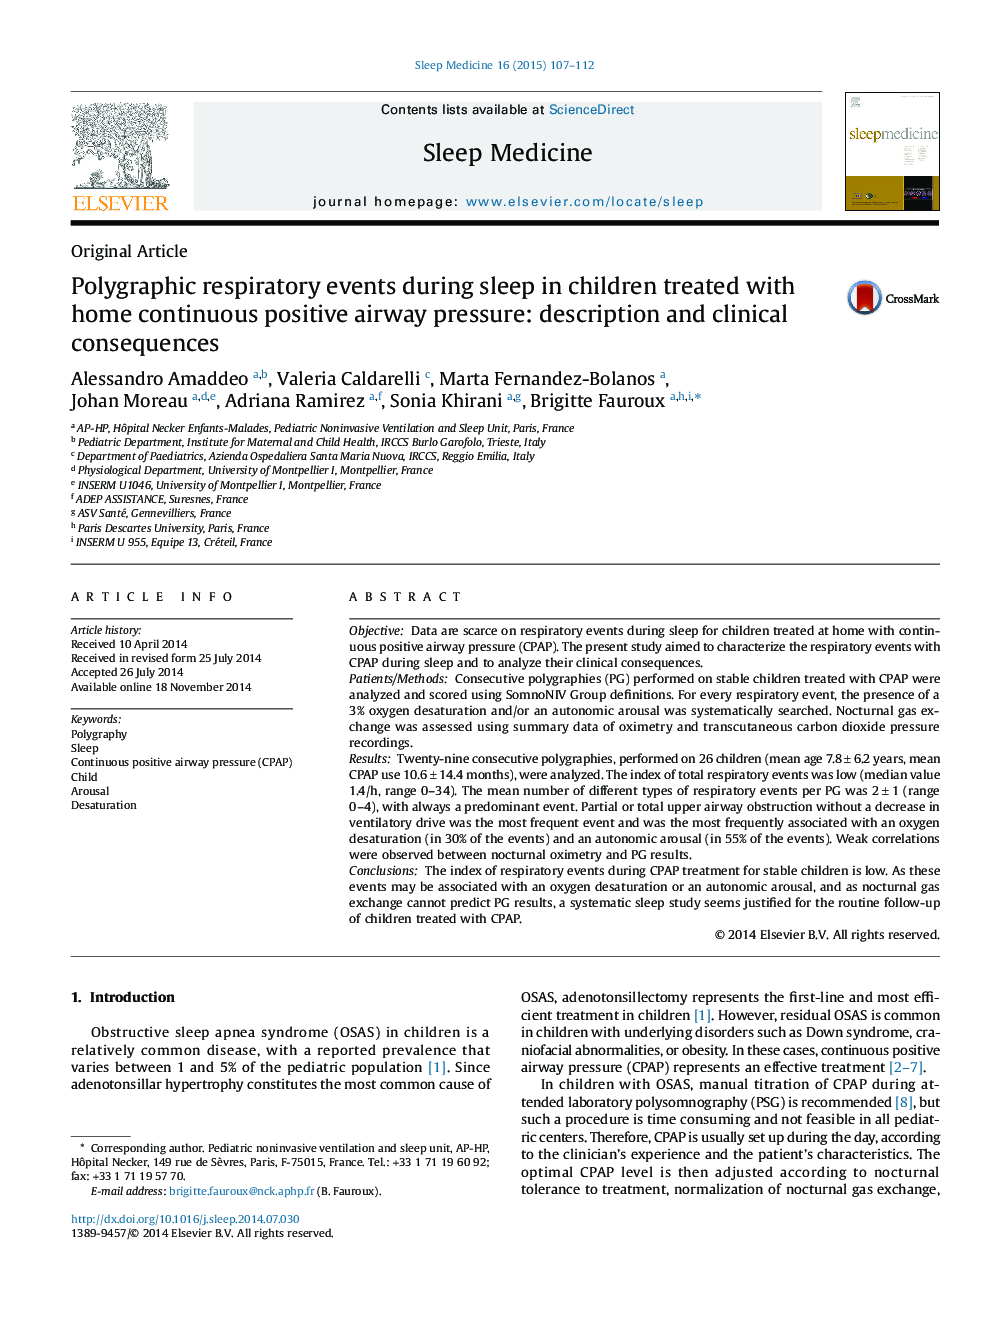 حوادث تنفسی پلی کربنیک در طول خواب در کودکان تحت درمان با فشار داخل مثانه هوایی مثبت خانگی: شرح و پیامدهای بالینی 